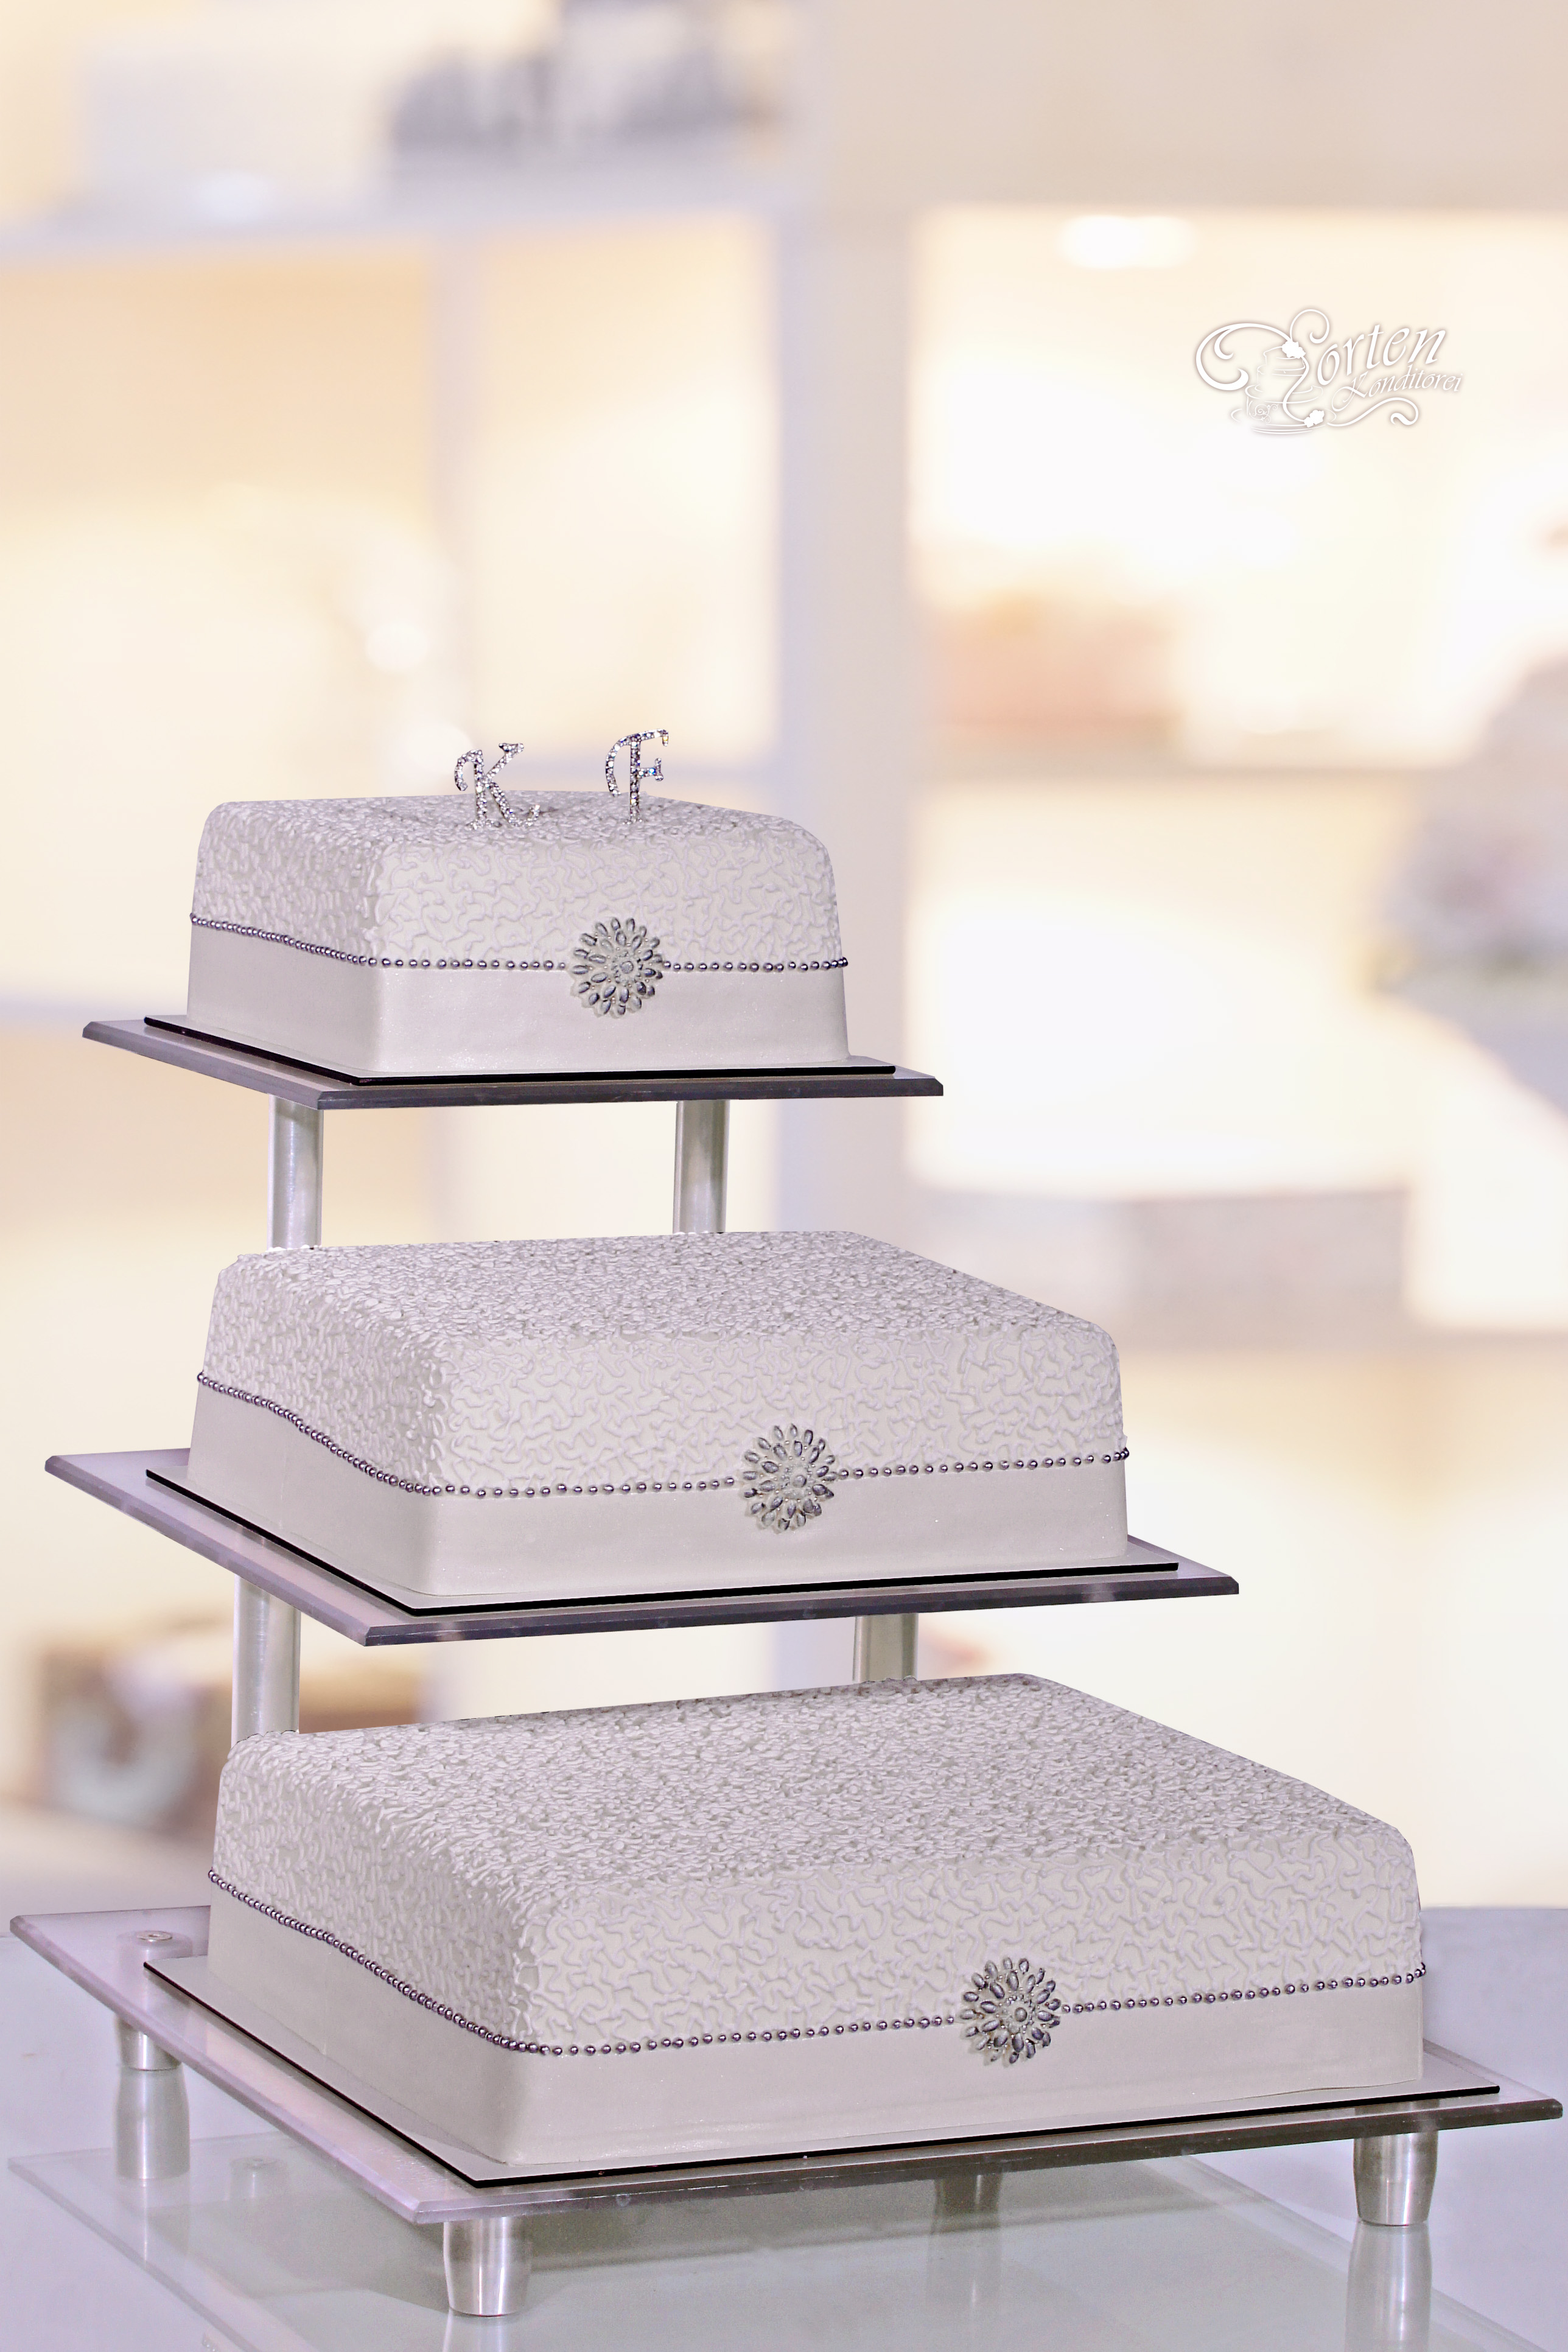 Schlichte, elegante rechteckige Hochzeitstorte in weiss. Mit frischen Blumen kann man die Farbdezente auf die Torte zu setzen.